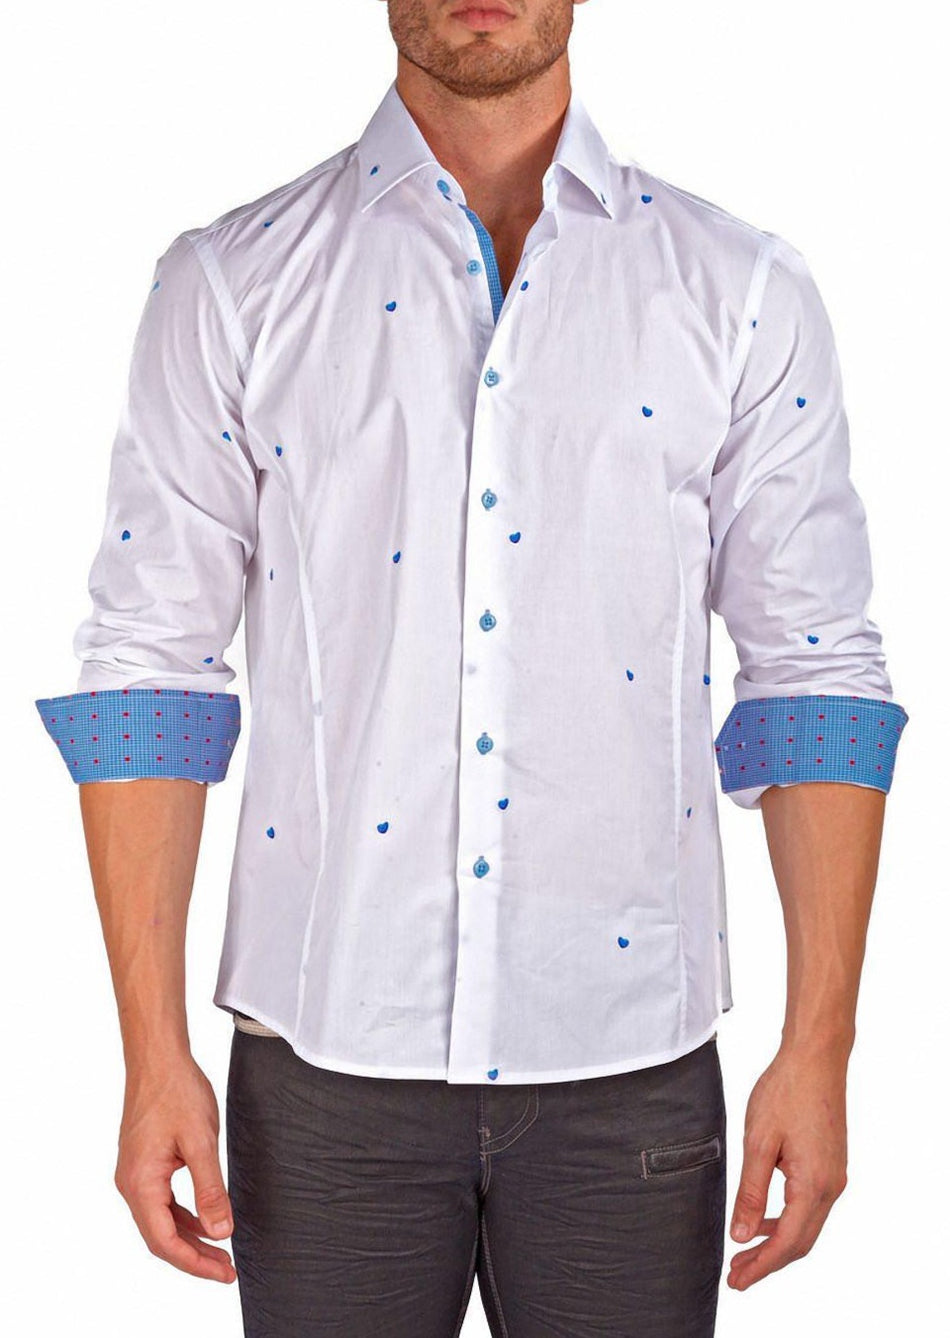 Men's Modern Fit Cotton Button Up Blue Hearts